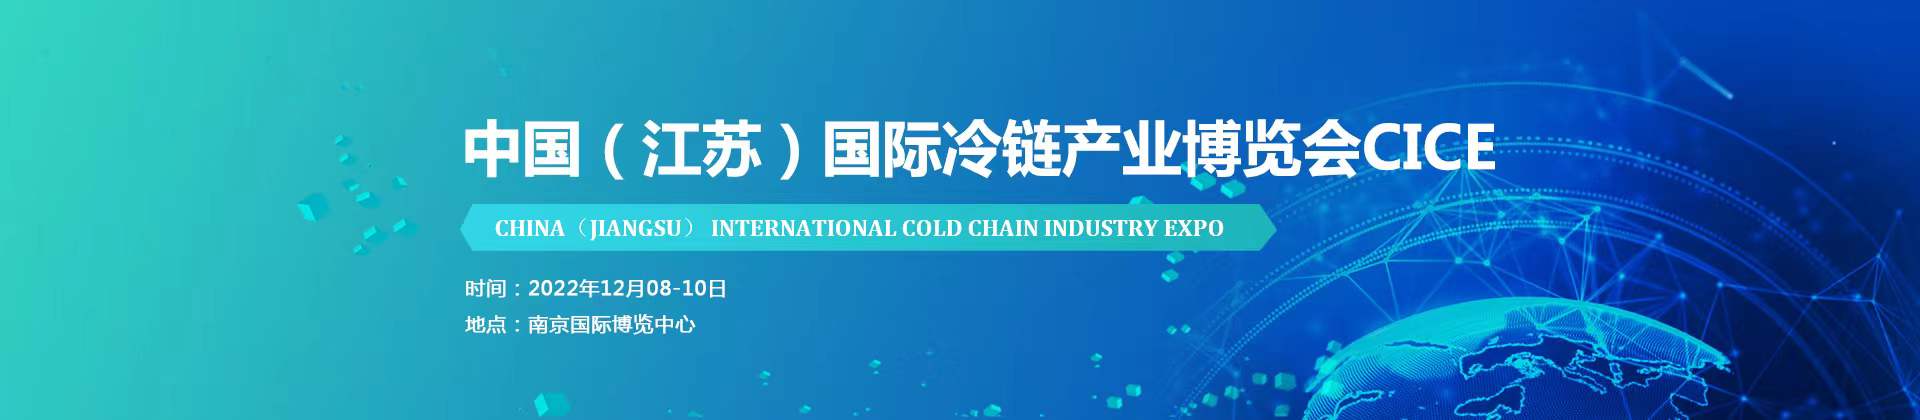 2022江苏国际冷链产业博览会